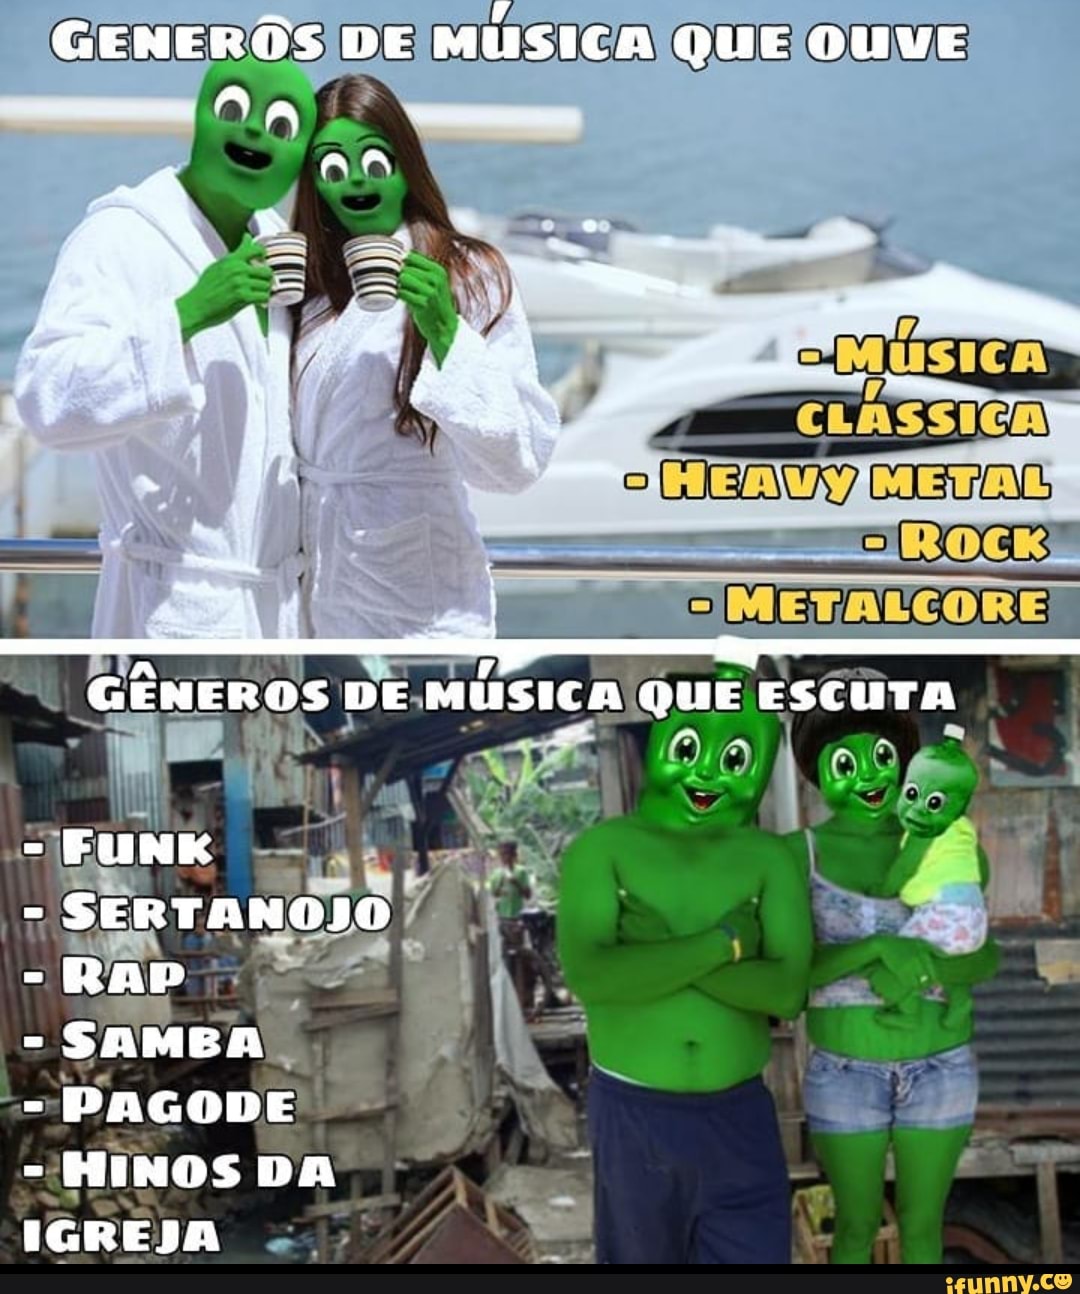 ESCUTAR MUSICAS ATUAIS ESCUTAR MUSICAS ANTIGAS - Gerador de Memes Online